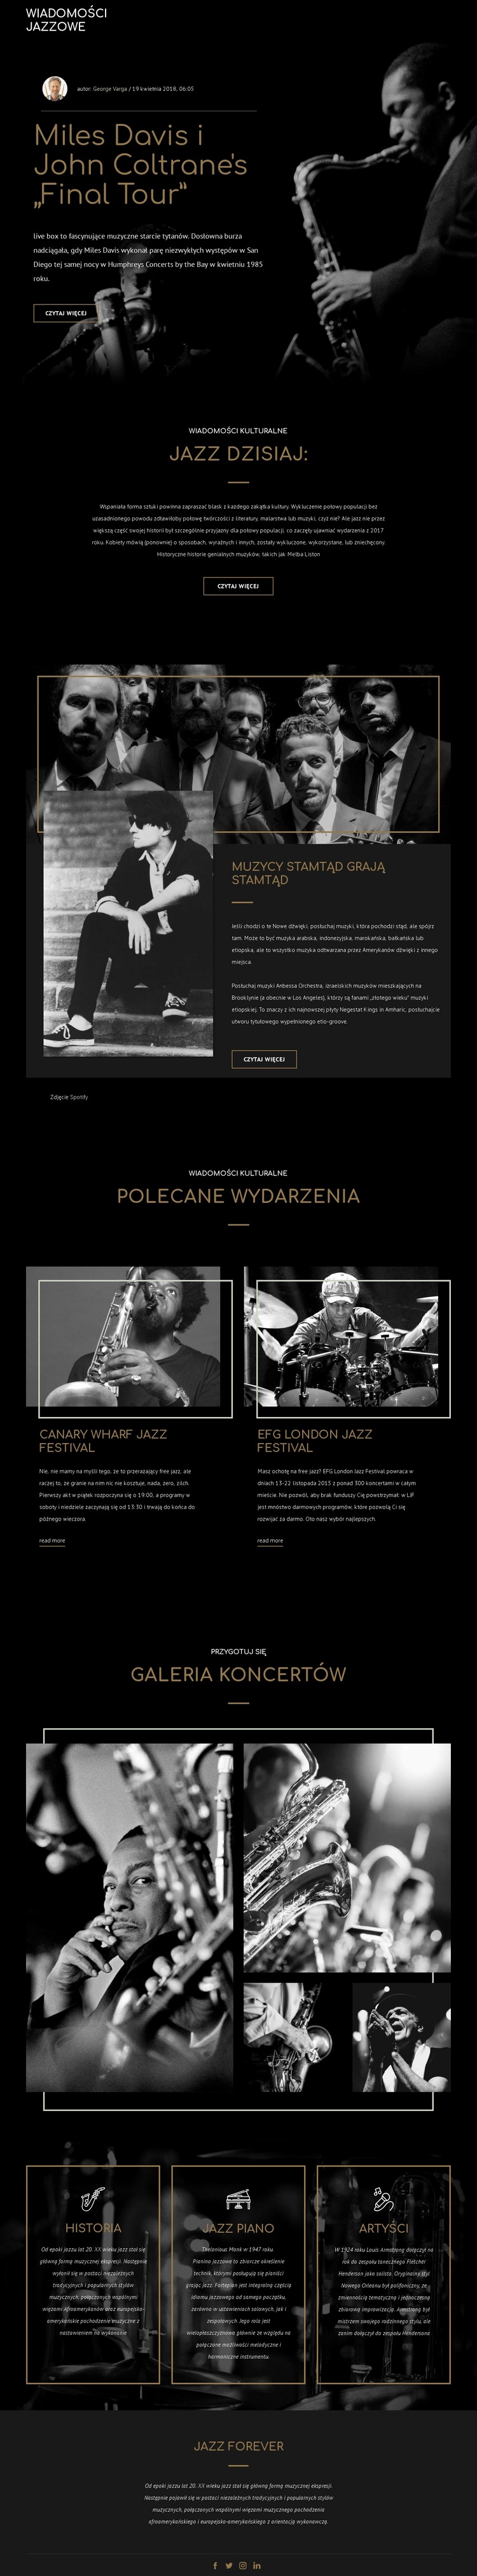 Legendy muzyki jazzowej Makieta strony internetowej